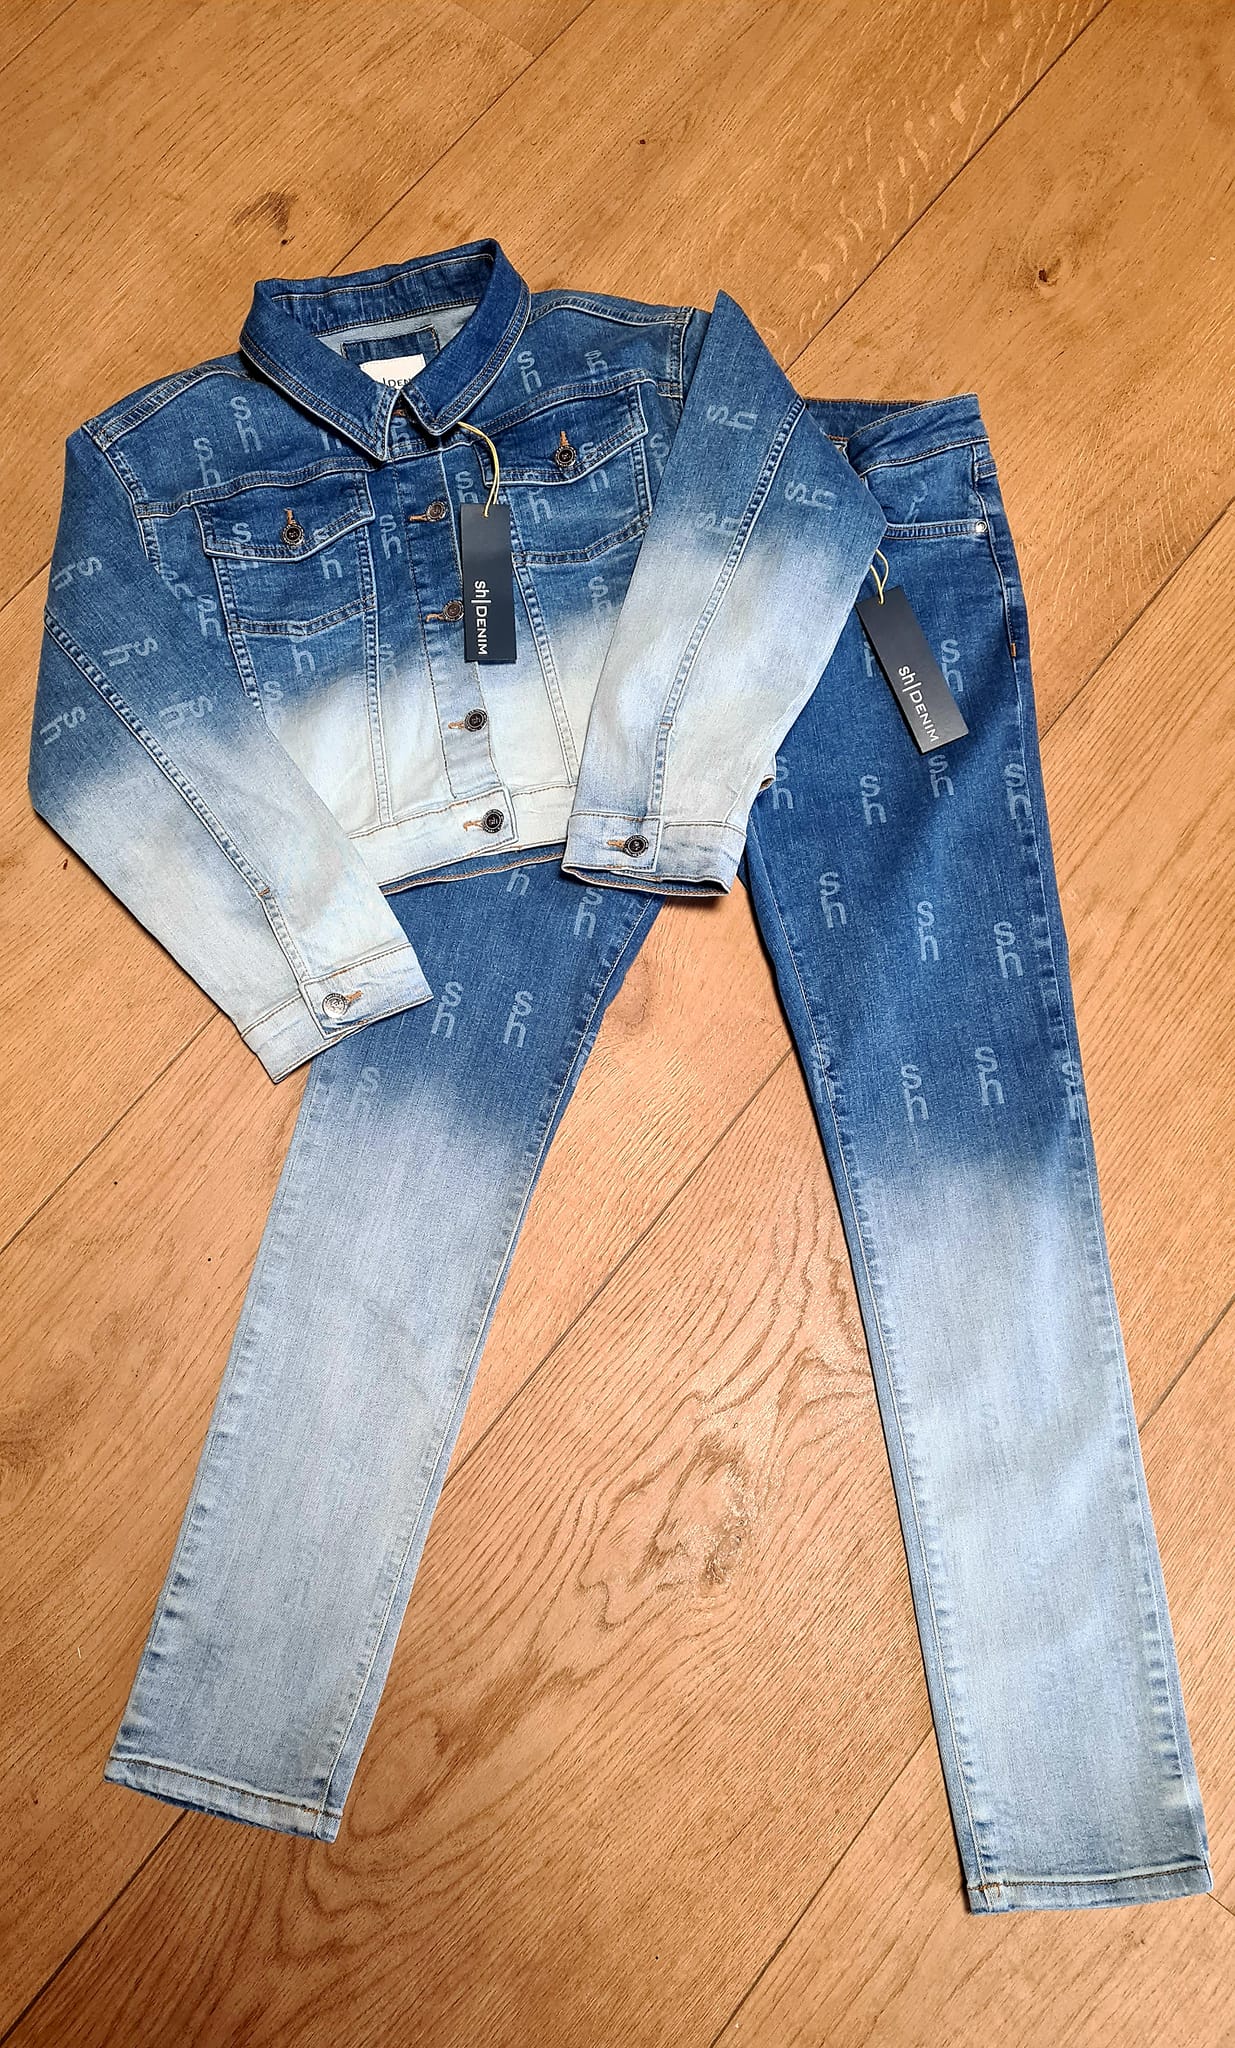 Silvian Heach jeans